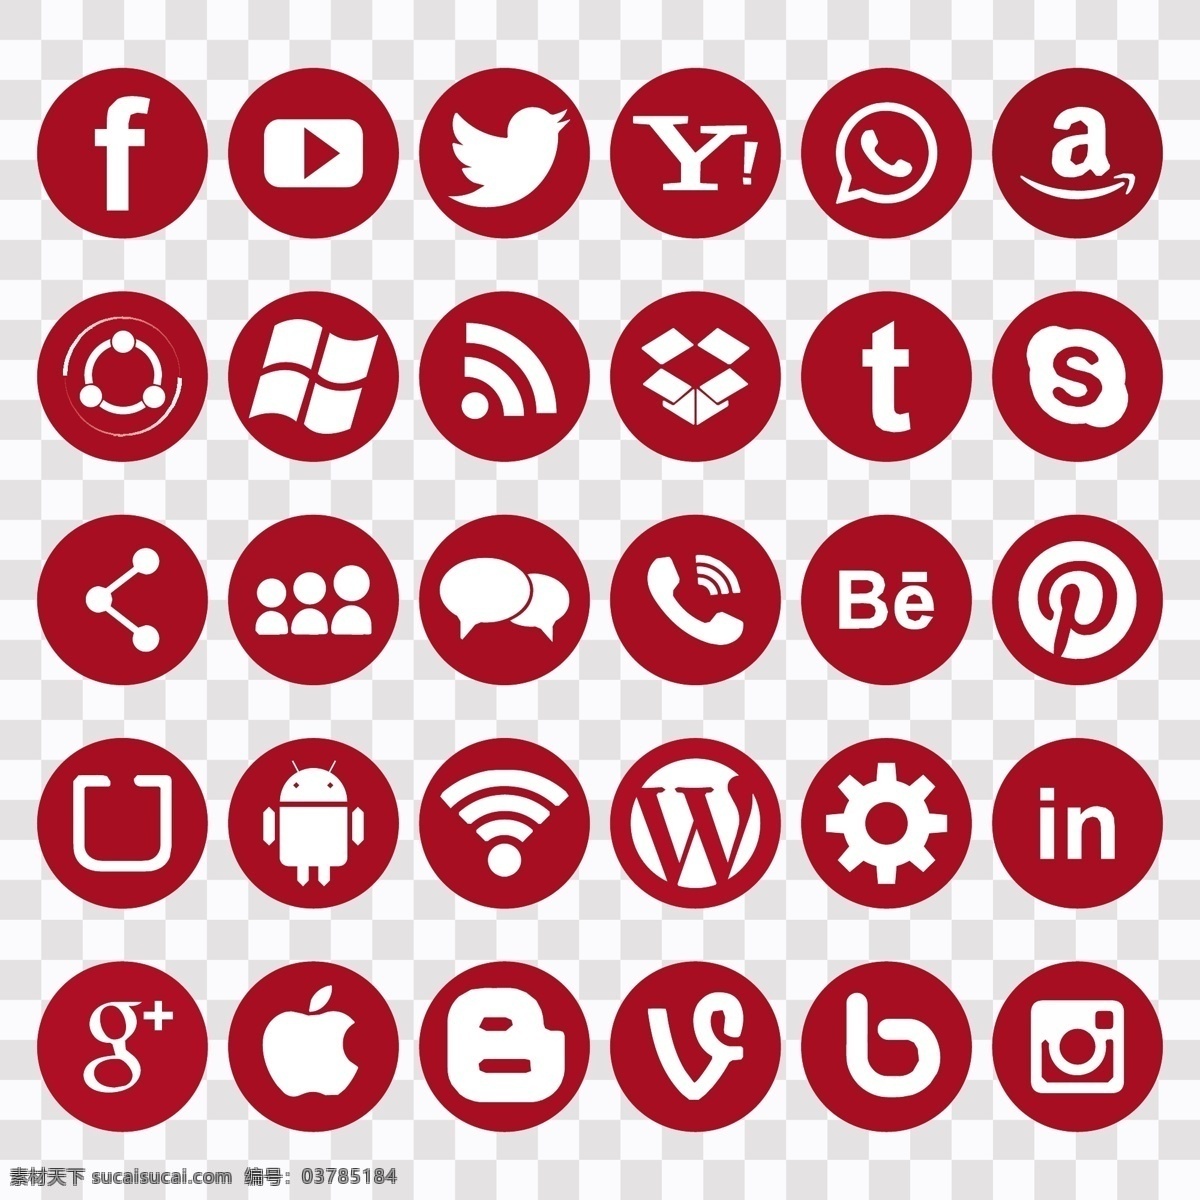 社交 网络 红色 图标 标识 业务 技术 脸谱网 手机 移动 instagram 营销 网页 互联网 丰富多彩 数字 符号 通信 推特